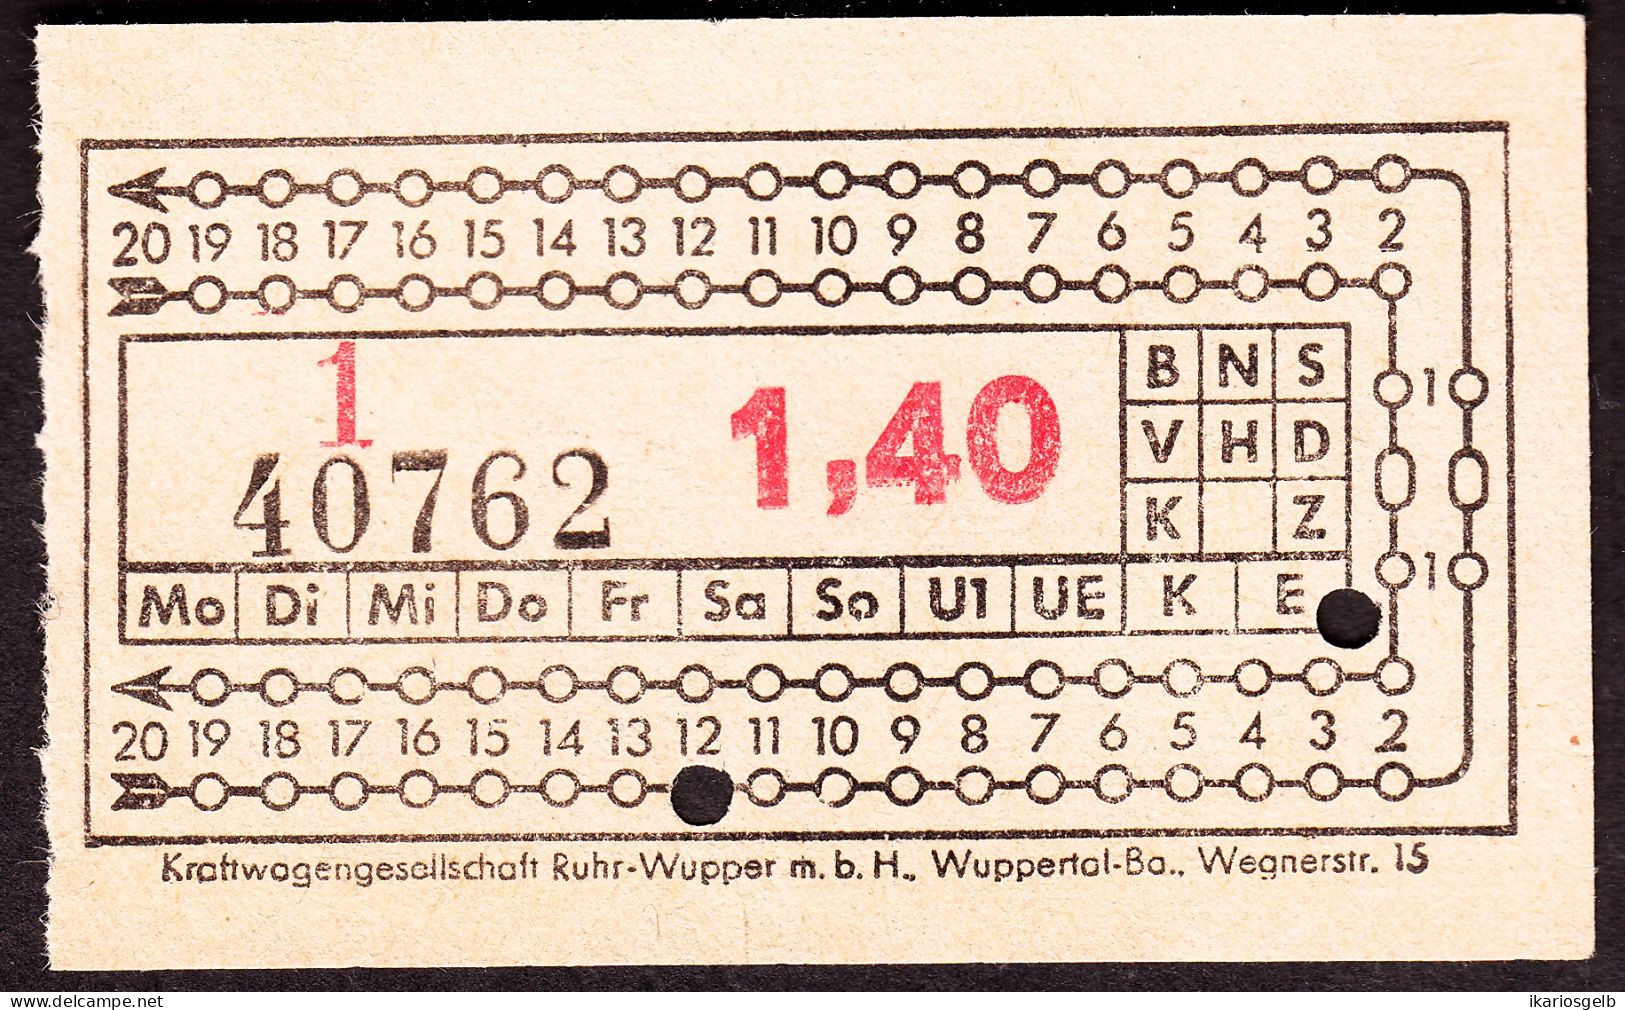 Wuppertal Kraftwagenverkehr Ruhr-Wupper ~1952 1,40 DM Omnibus- Fahrschein Boleto Biglietto Ticket Billet - Europe